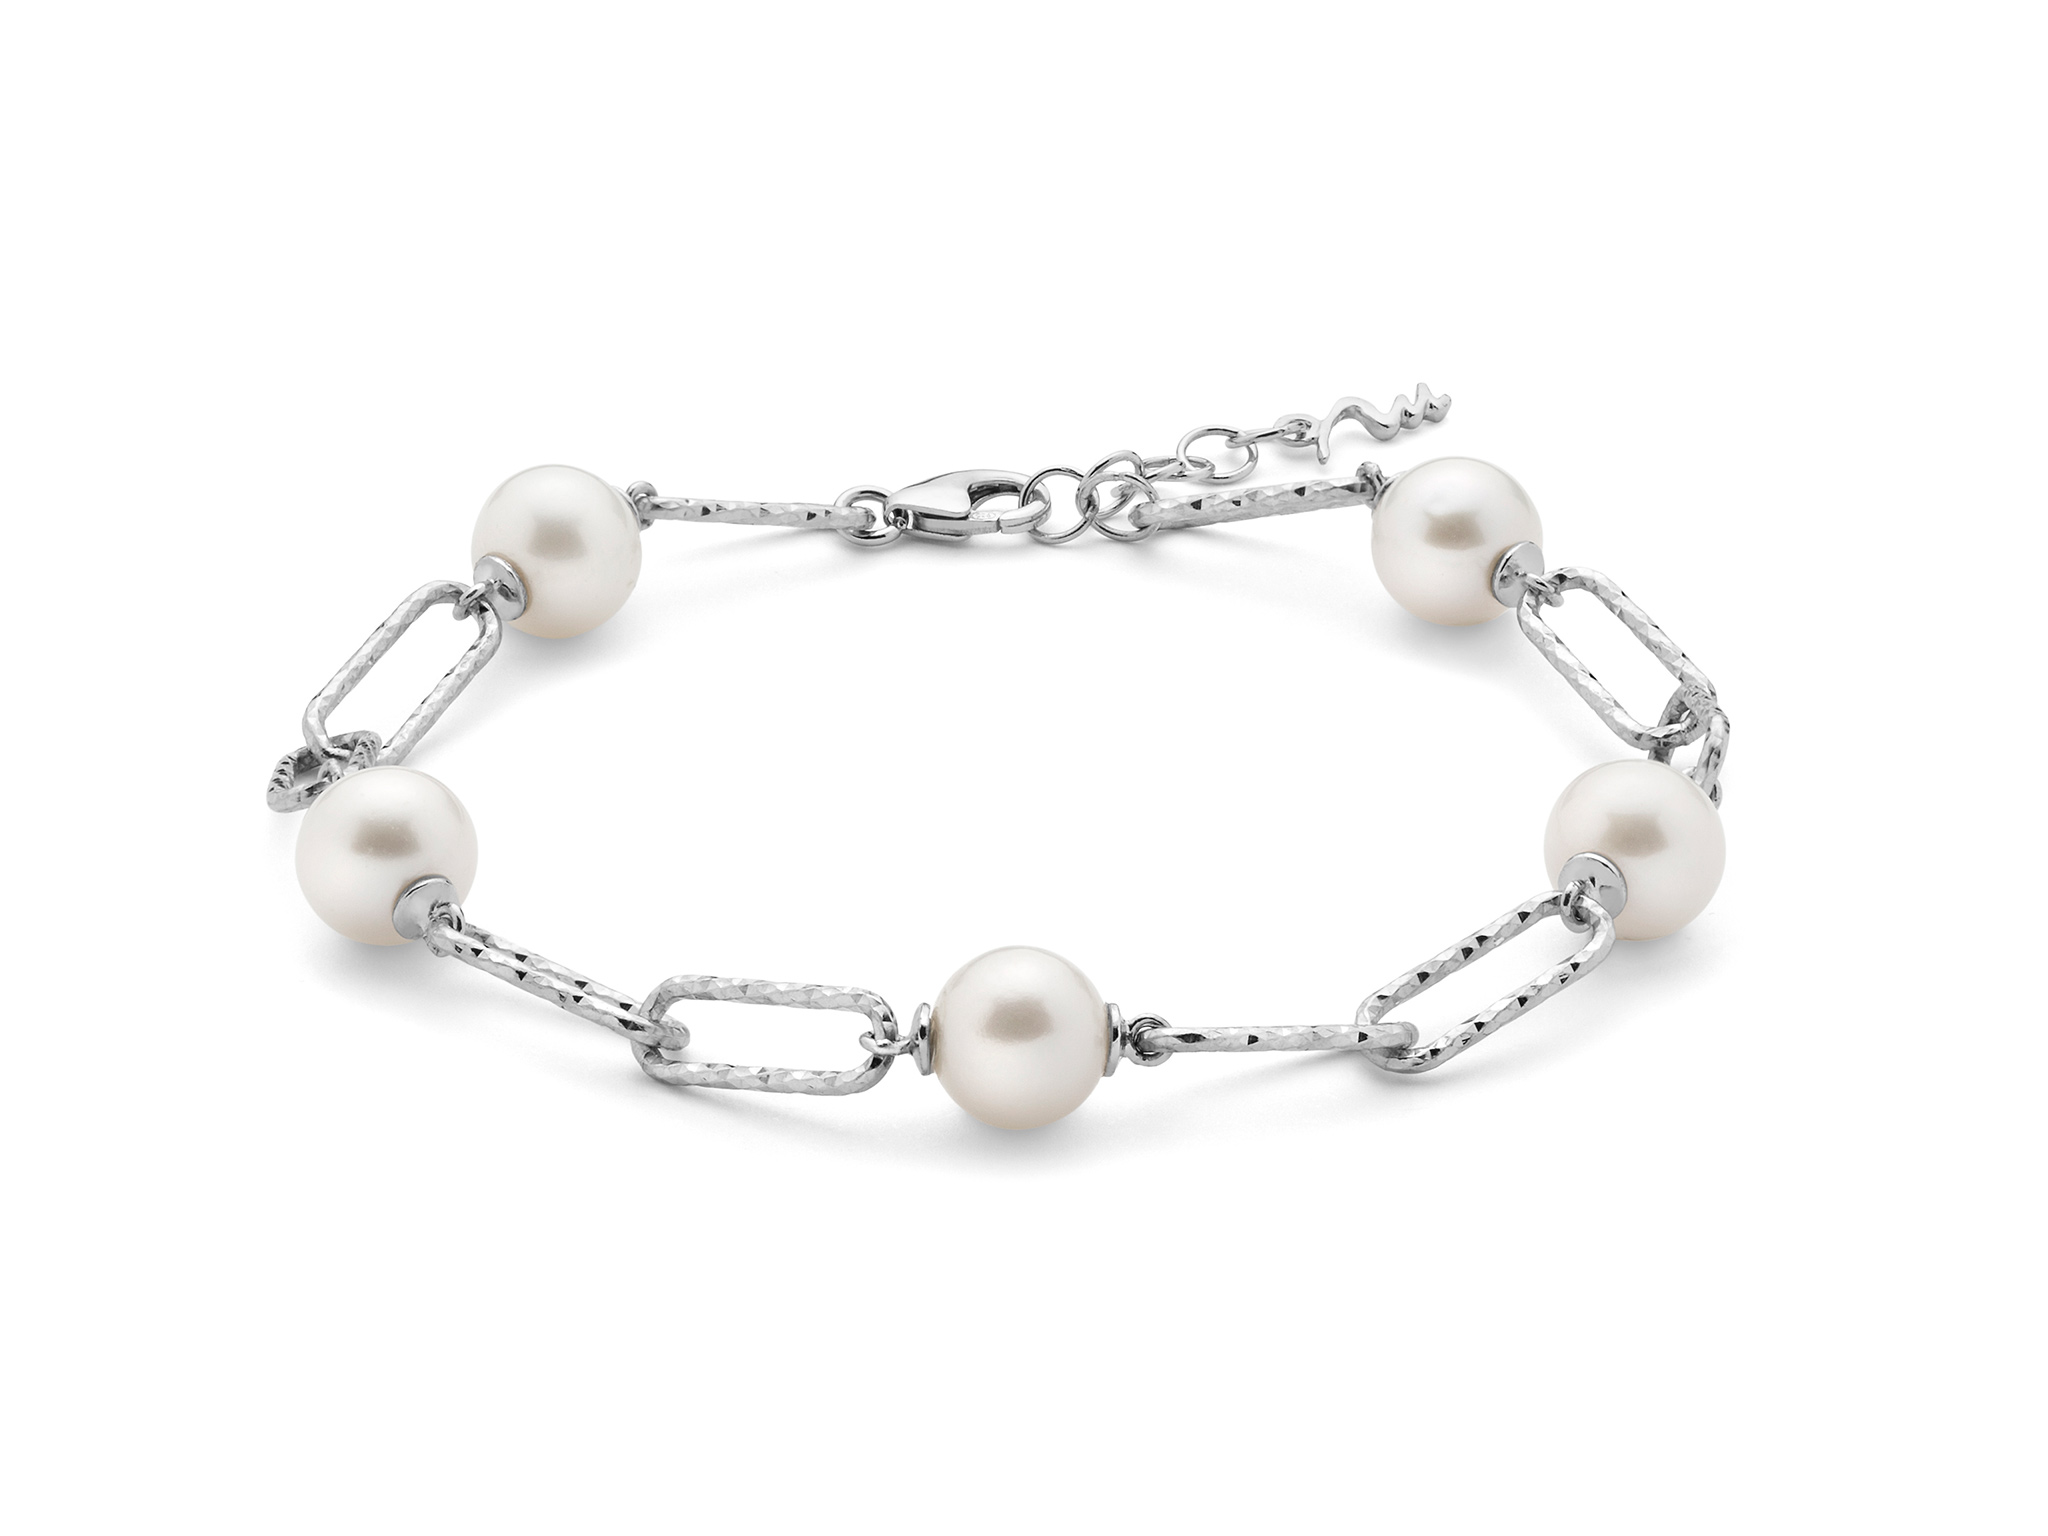 Bracciale con catena in argento e perle. - PBR3201